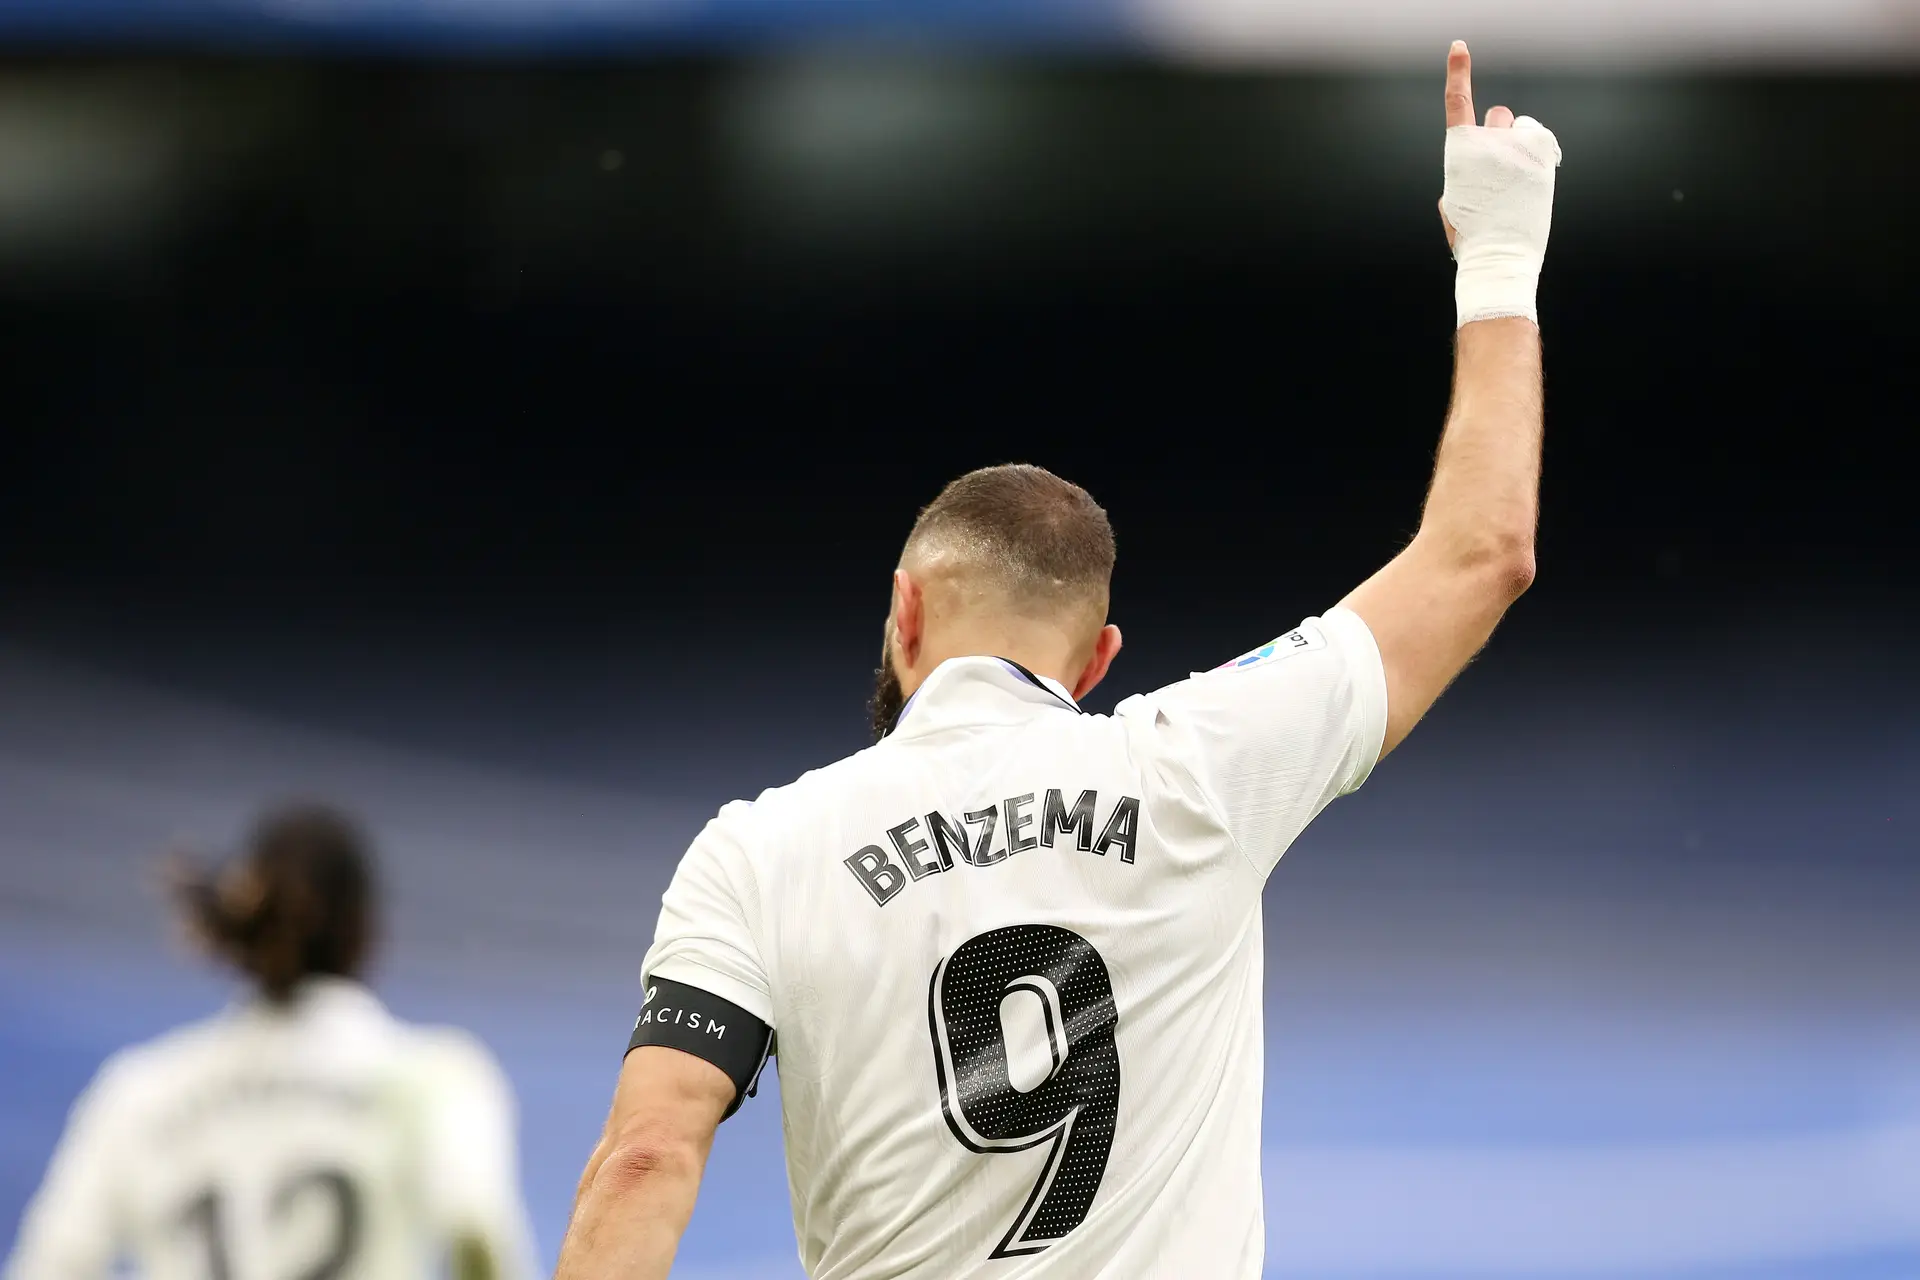 Benzema joga hoje? Os suspensos e lesionados do Al Ittihad contra